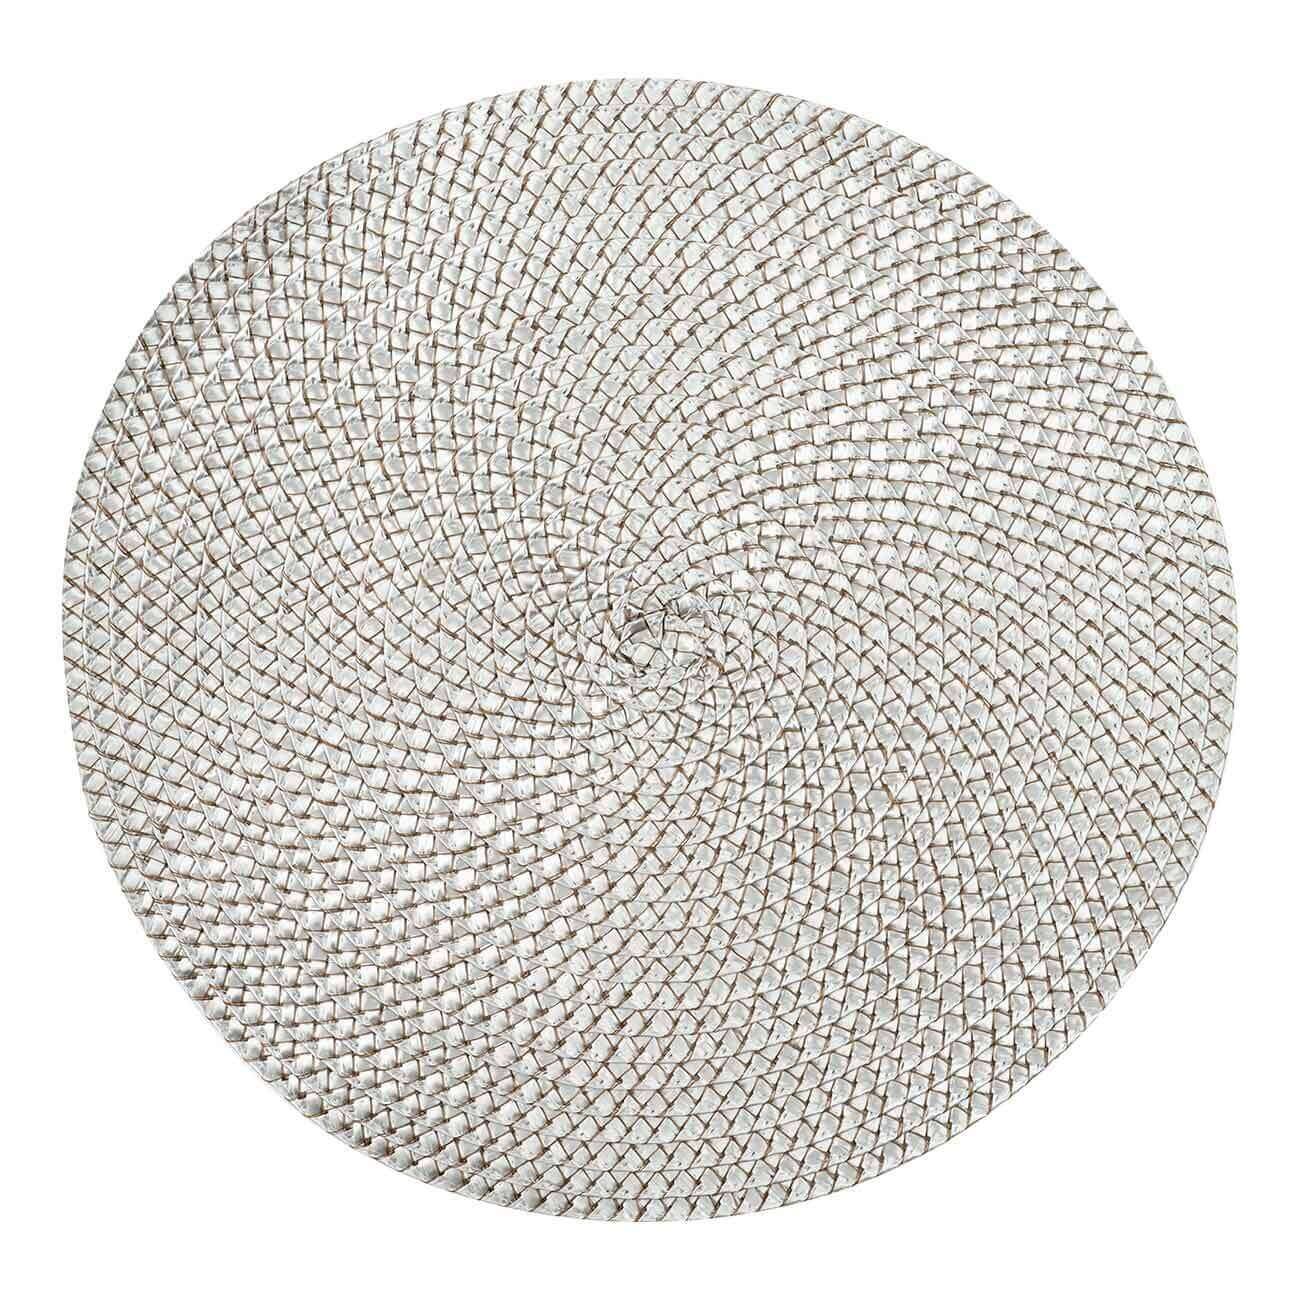 Салфетка под приборы, 38 см, полипропилен/ПЭТ, круглая, серебристая, Circle braid - фото 1